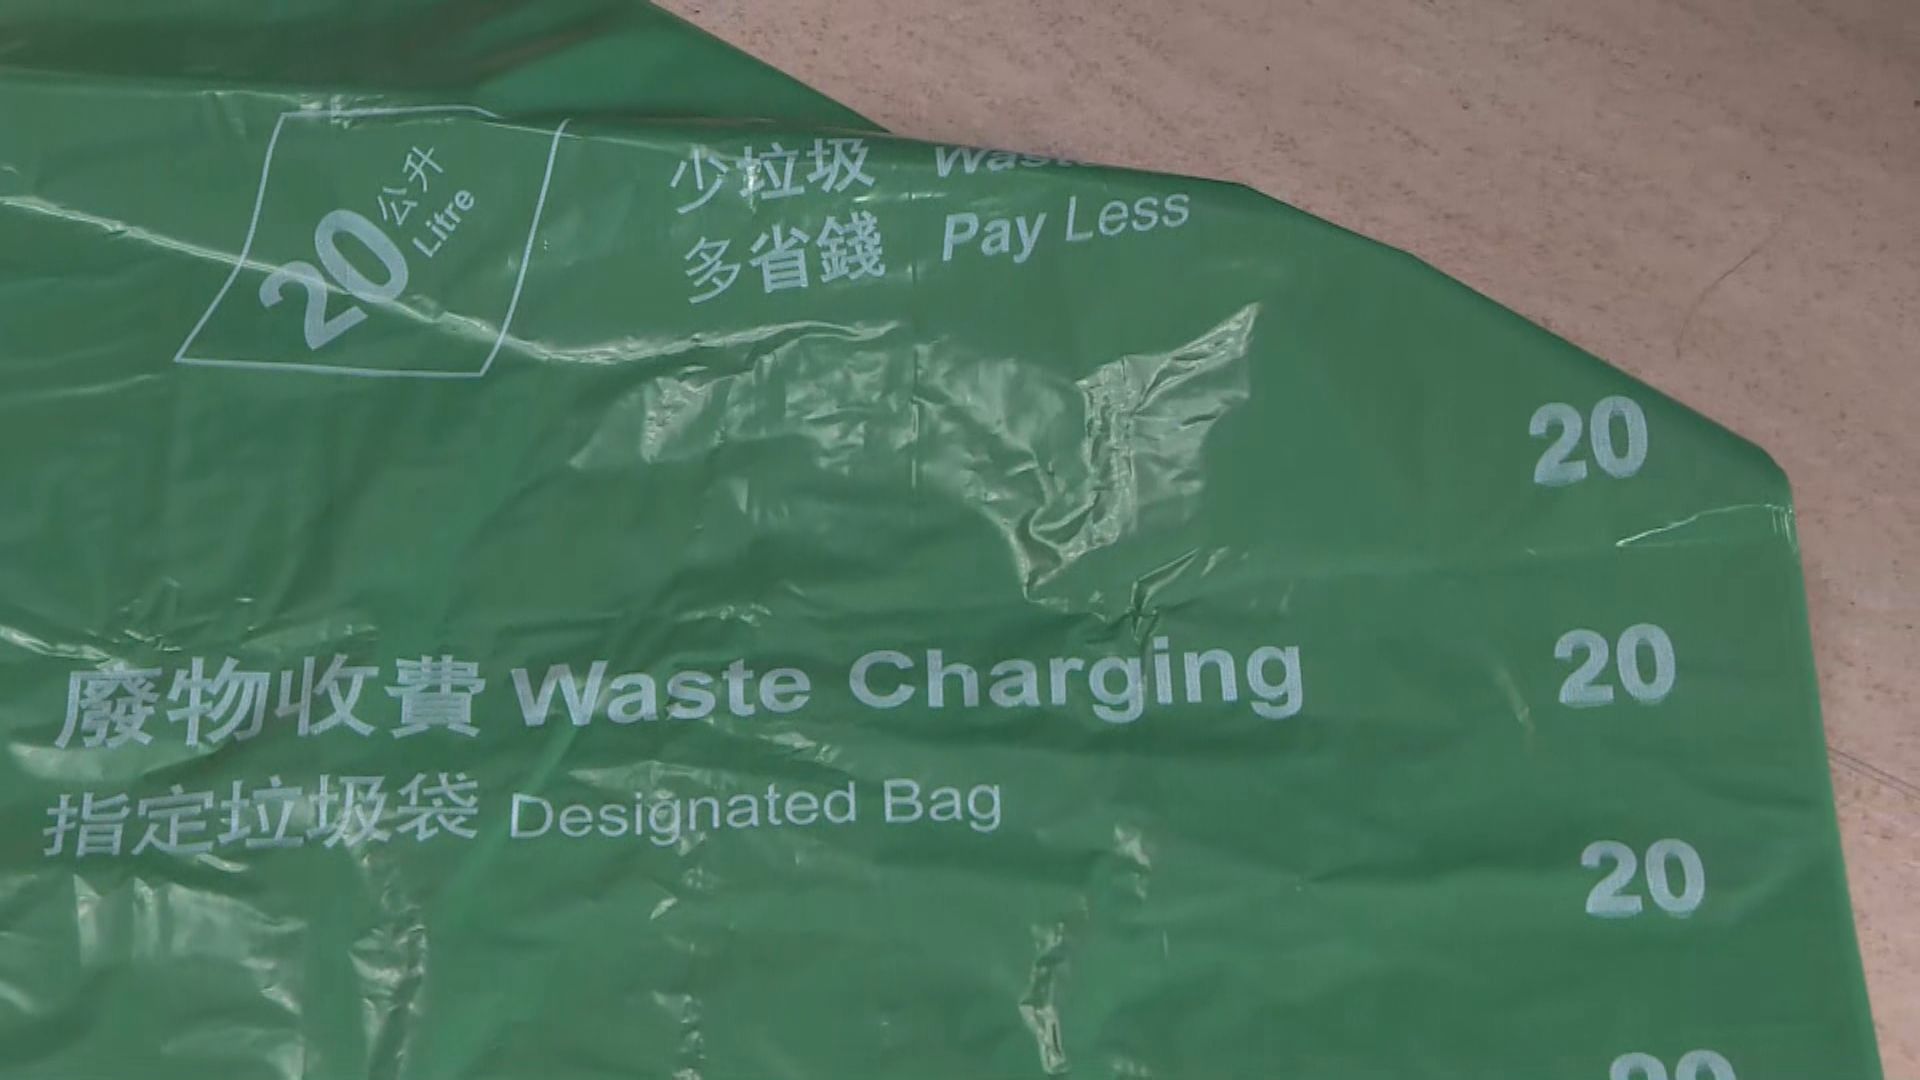 垃圾徵費年底實施　乙明邨六成居民試用指定派垃圾袋　有街坊指需要時間適應